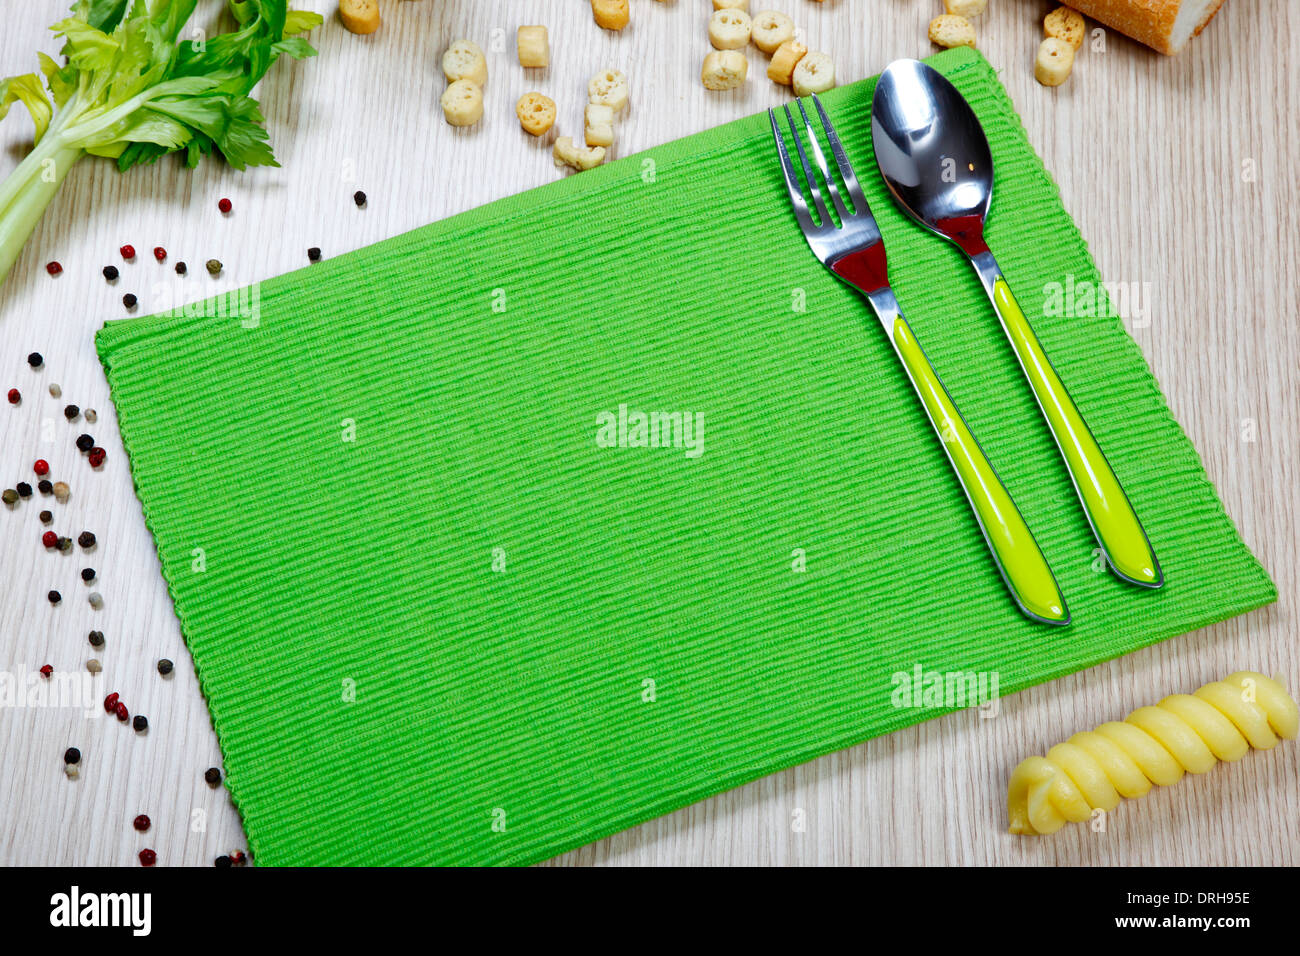 eine grüne Serviette mit Besteck auf dem Tisch Stockfoto